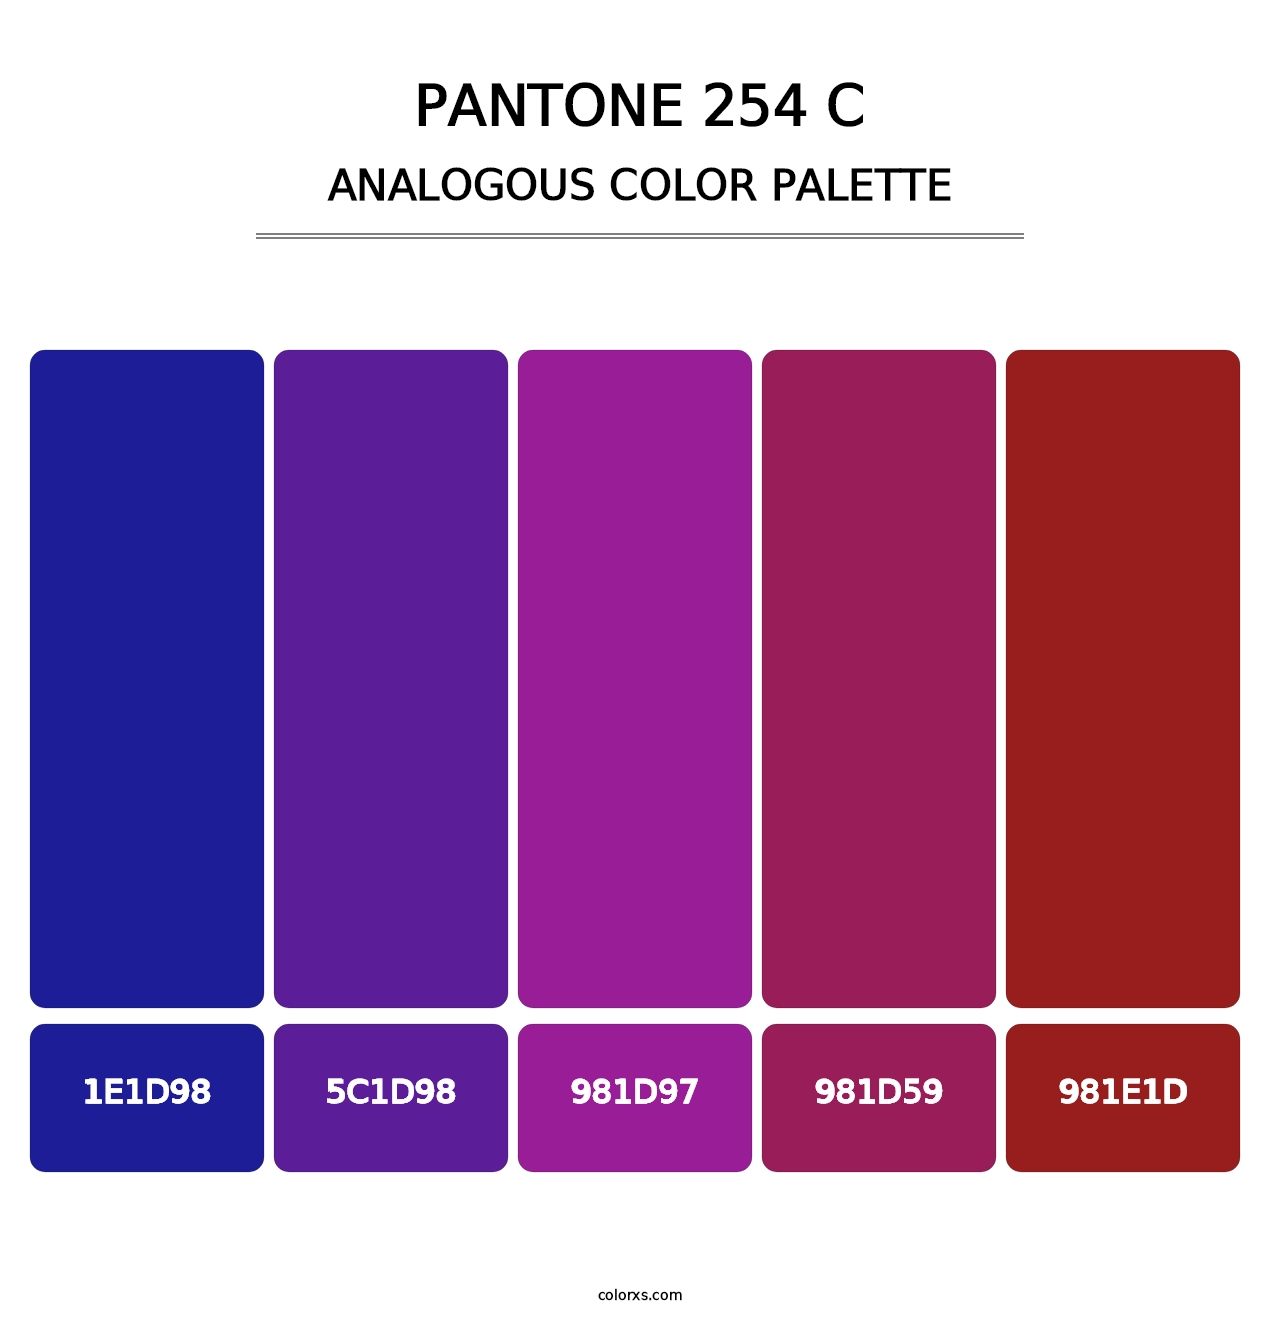 PANTONE 254 C - Analogous Color Palette